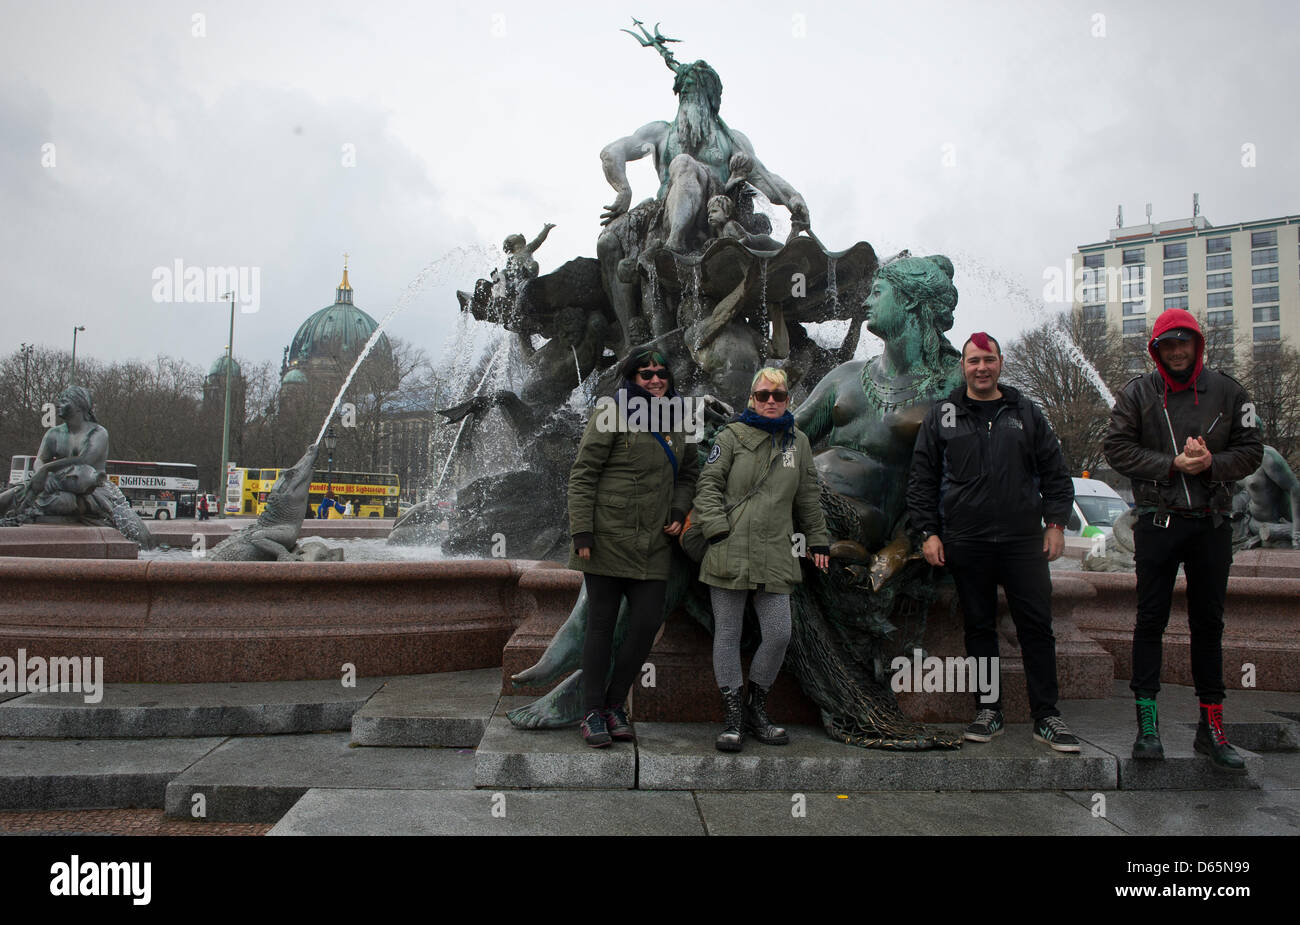 Italienische Touristen haben ihr Bild vor dem Neptunbrunnen in Berlin, Deutschland, 12. April 2013 getroffen. Berliner Dom im Hintergrund zu sehen. 36 Zierbrunnen in Berlin wurden am 20. April 2013 in Betrieb genommen. Foto: JAN-PHILIPP STROBEL Stockfoto